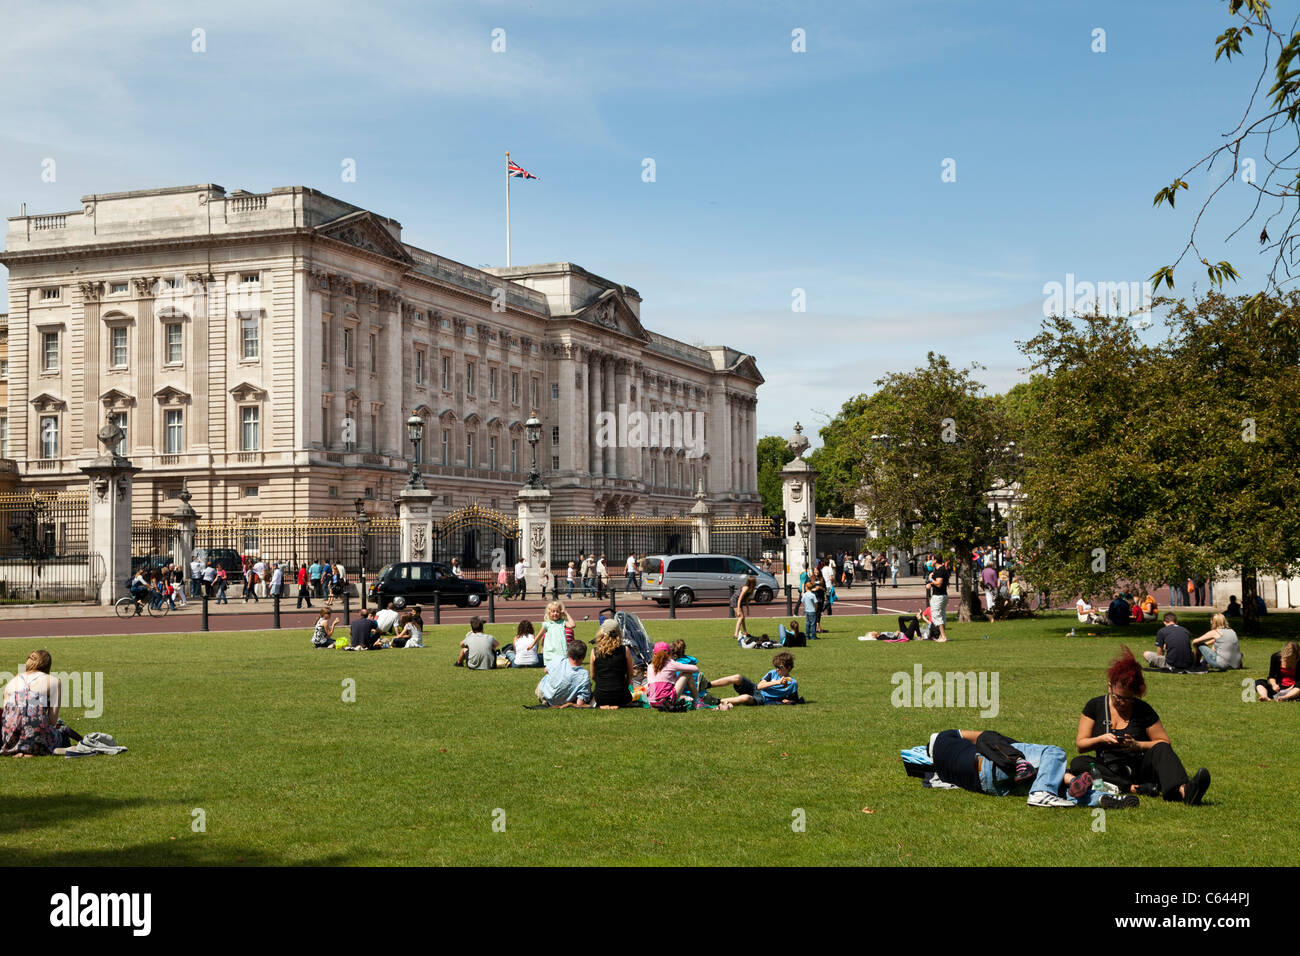 Los turistas descansando sobre el césped fuera del Palacio de Buckingham Foto de stock